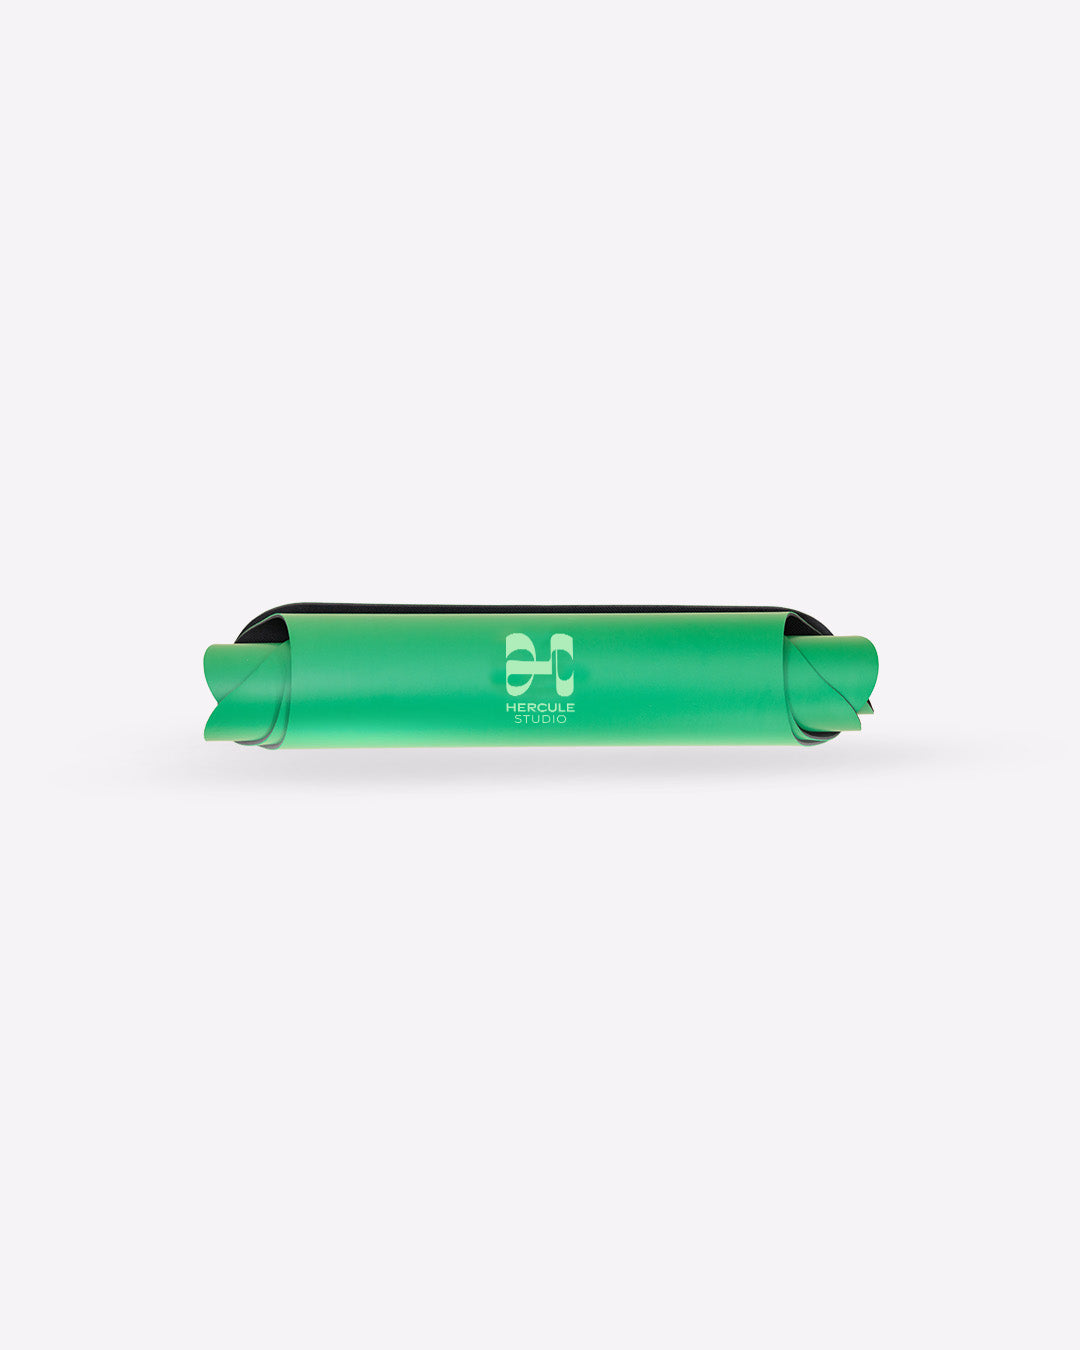 Tapis de sol pour le yoga de la marque hercule studio modèle mar couleur golf green packshot roulé